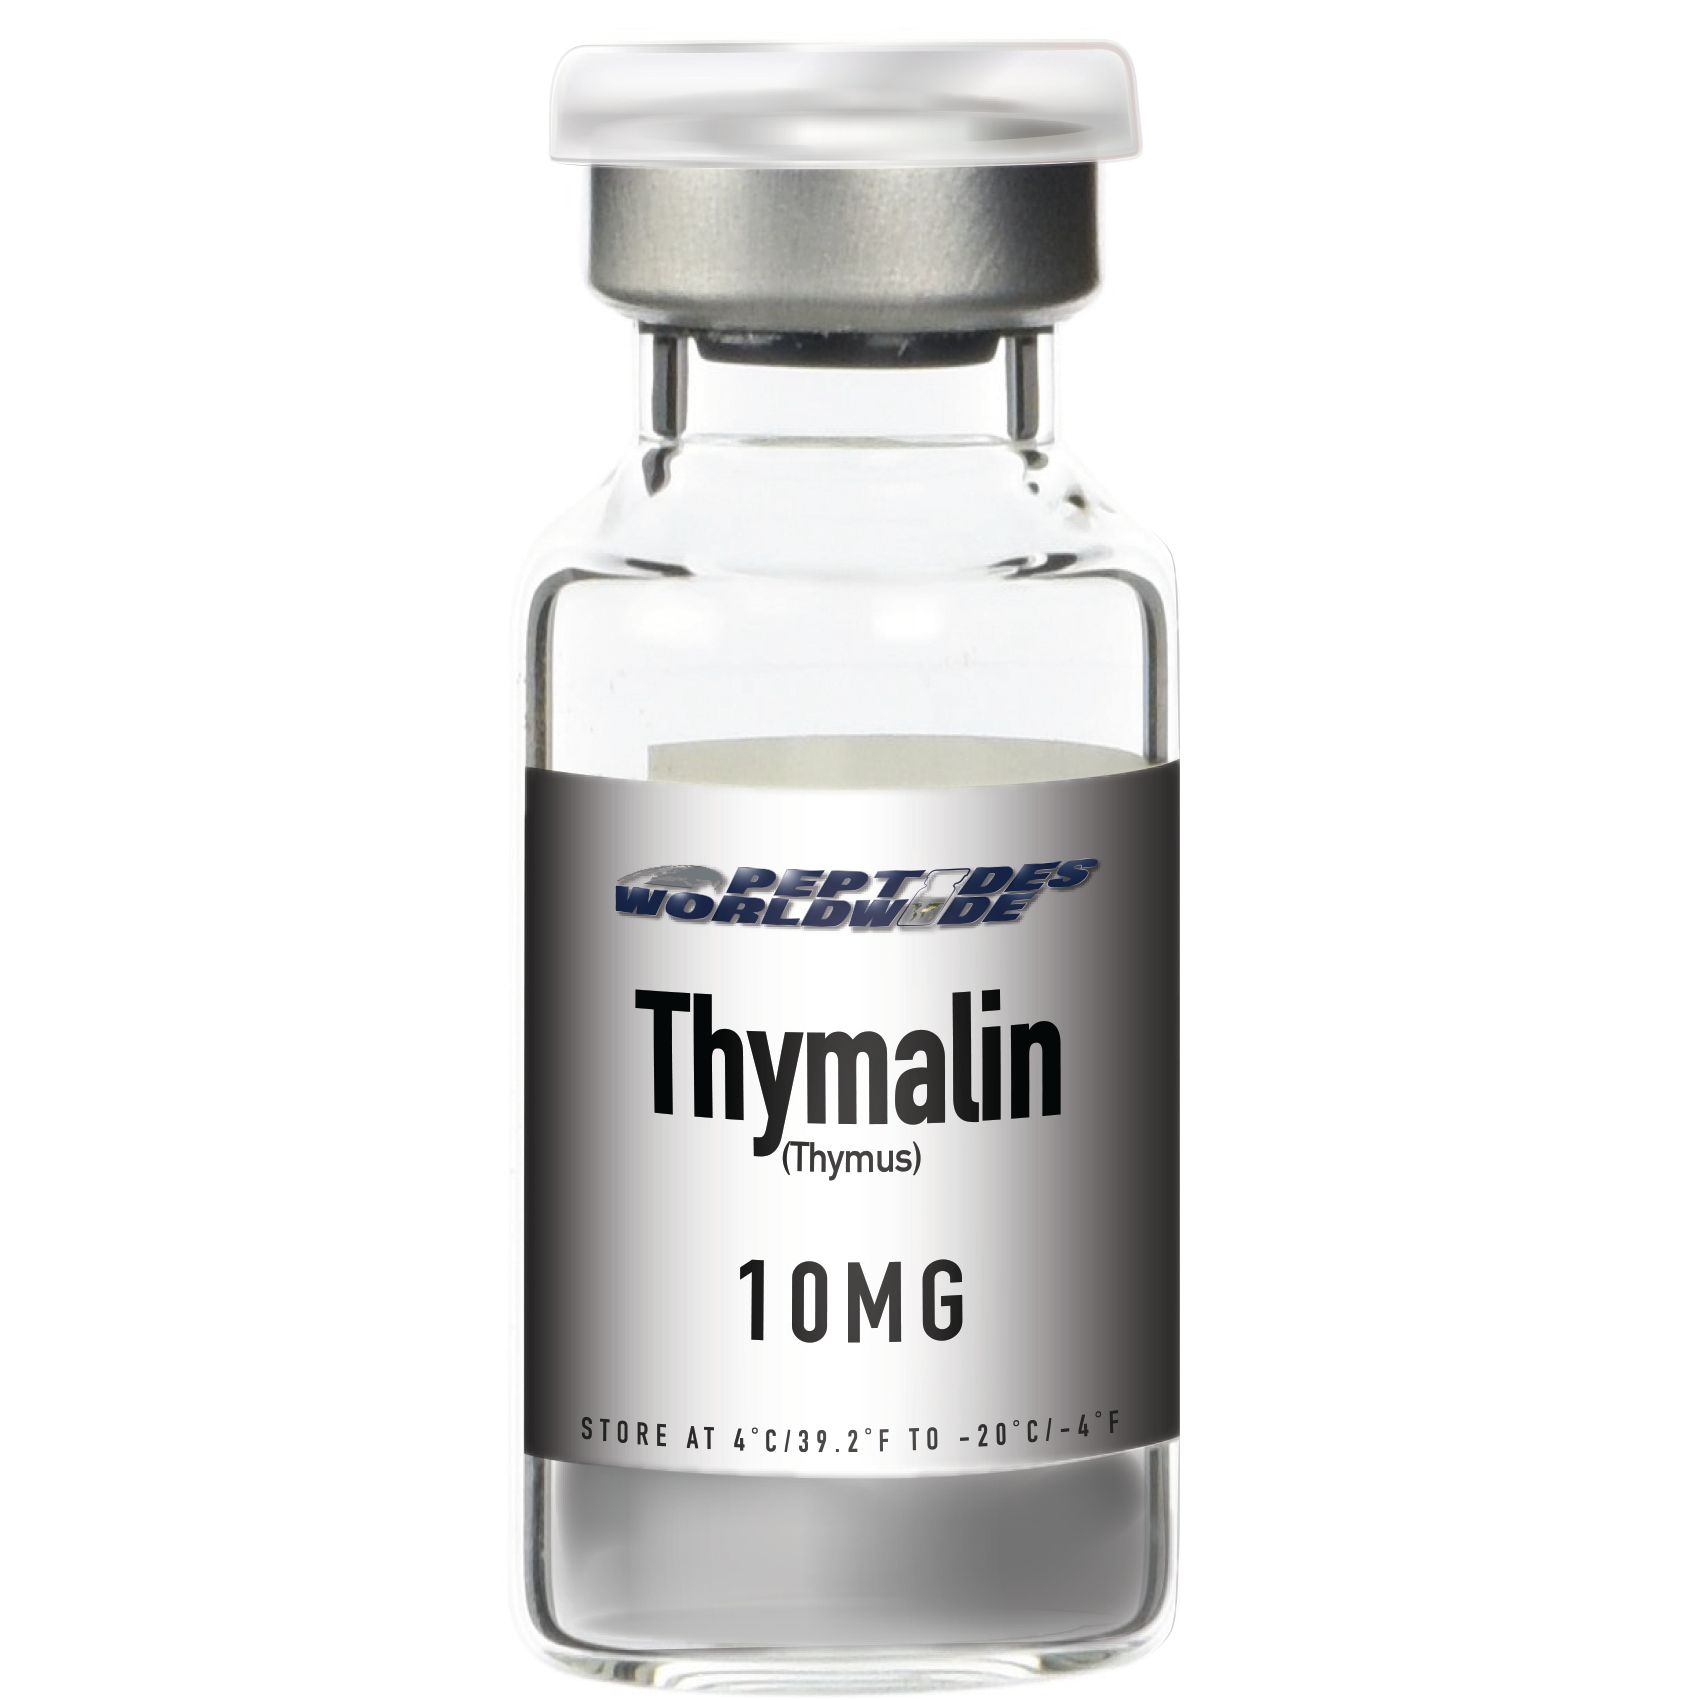 Thymalin